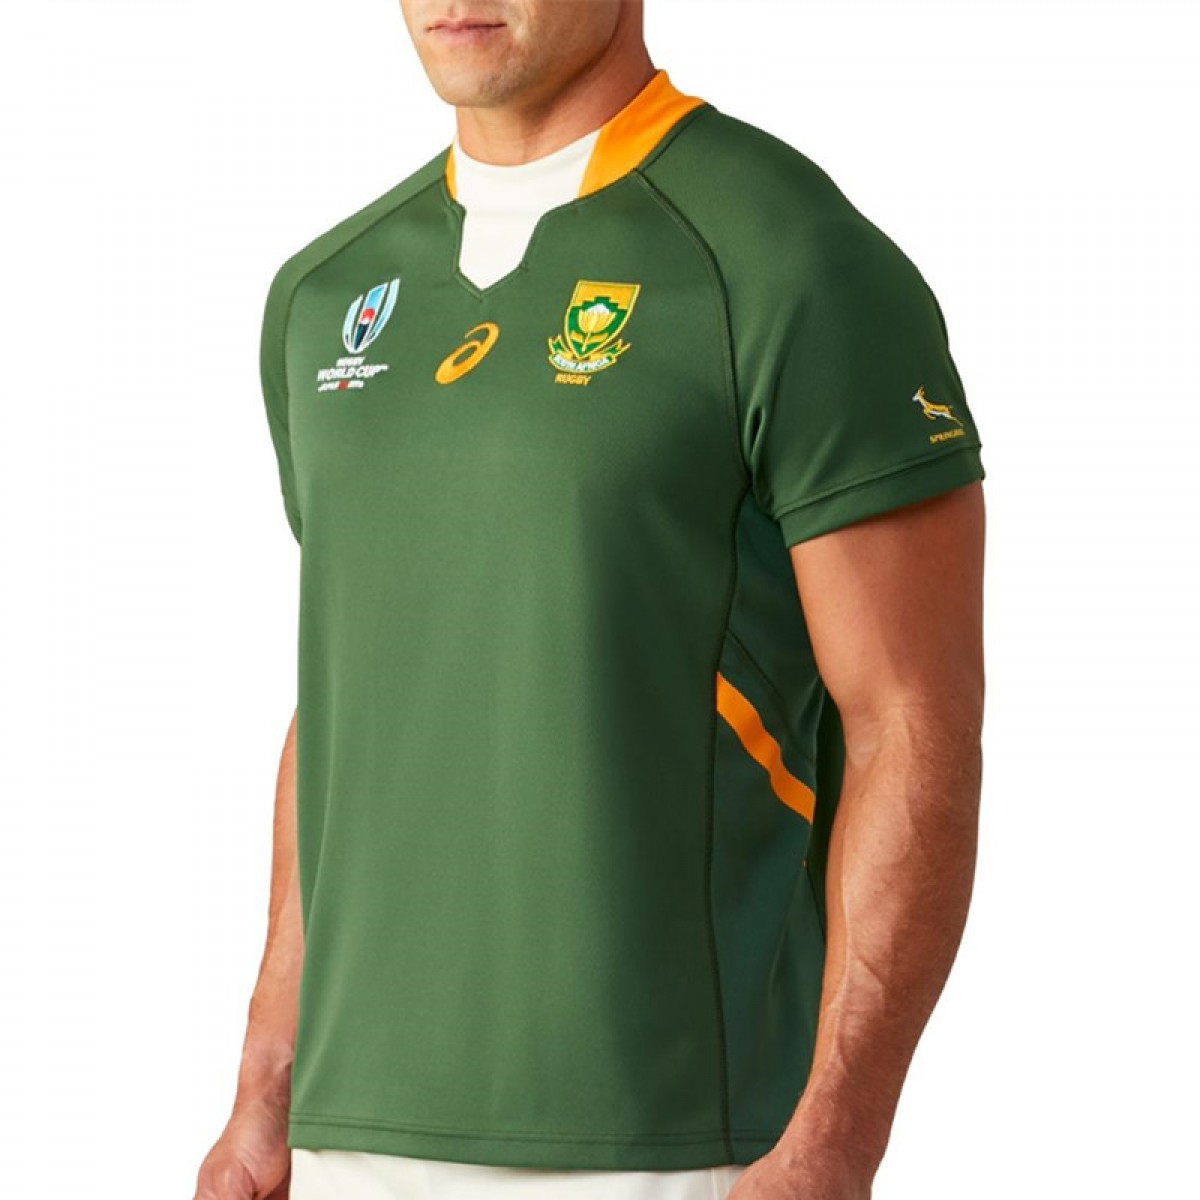 Das Neueste Trikot Im November 2019 2019 Weltmeisterschaft Rugby Jersey Rugby-Trikot South Africa Für Männer Kurzarm-Freizeit-T-Shirt-Trainingsanzüge Südafrika Zu Heim Auswärts 